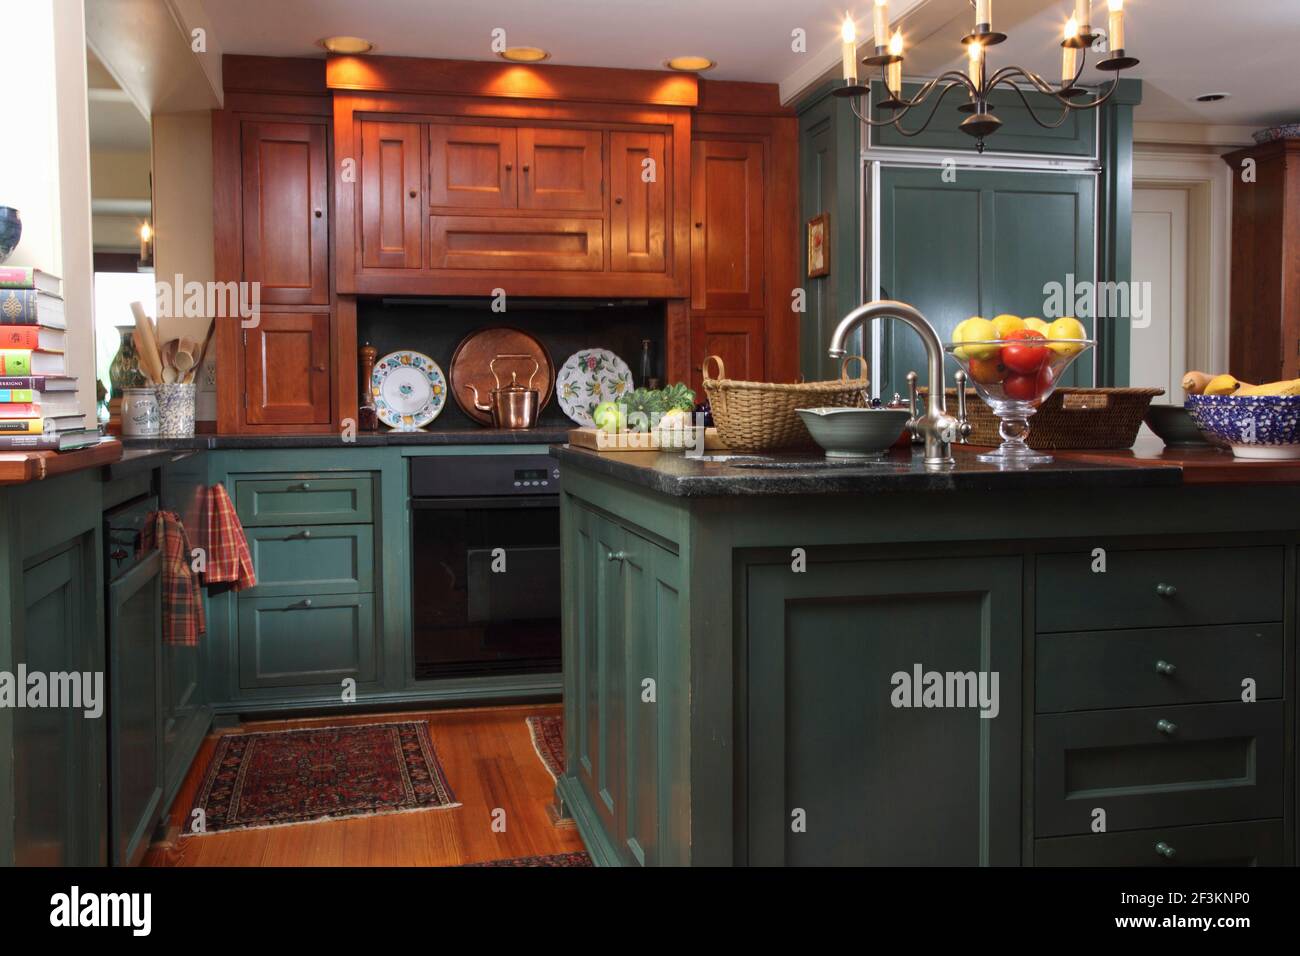 Cucina con mobili in legno personalizzati e vernice verde verdigris Foto  stock - Alamy